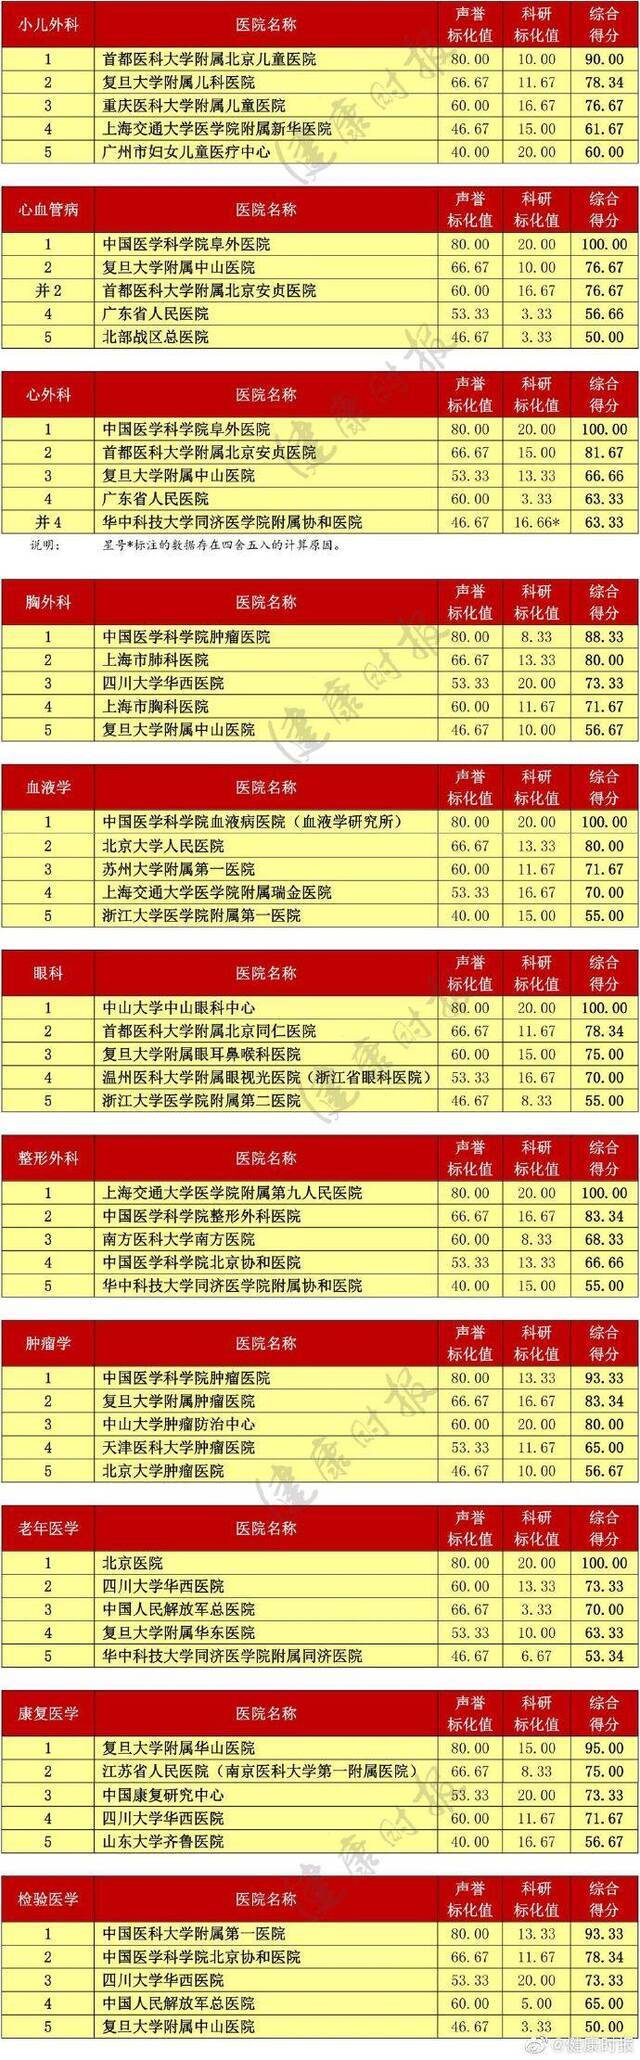 复旦版《2018年度中国医院排行榜》:北京协和居首